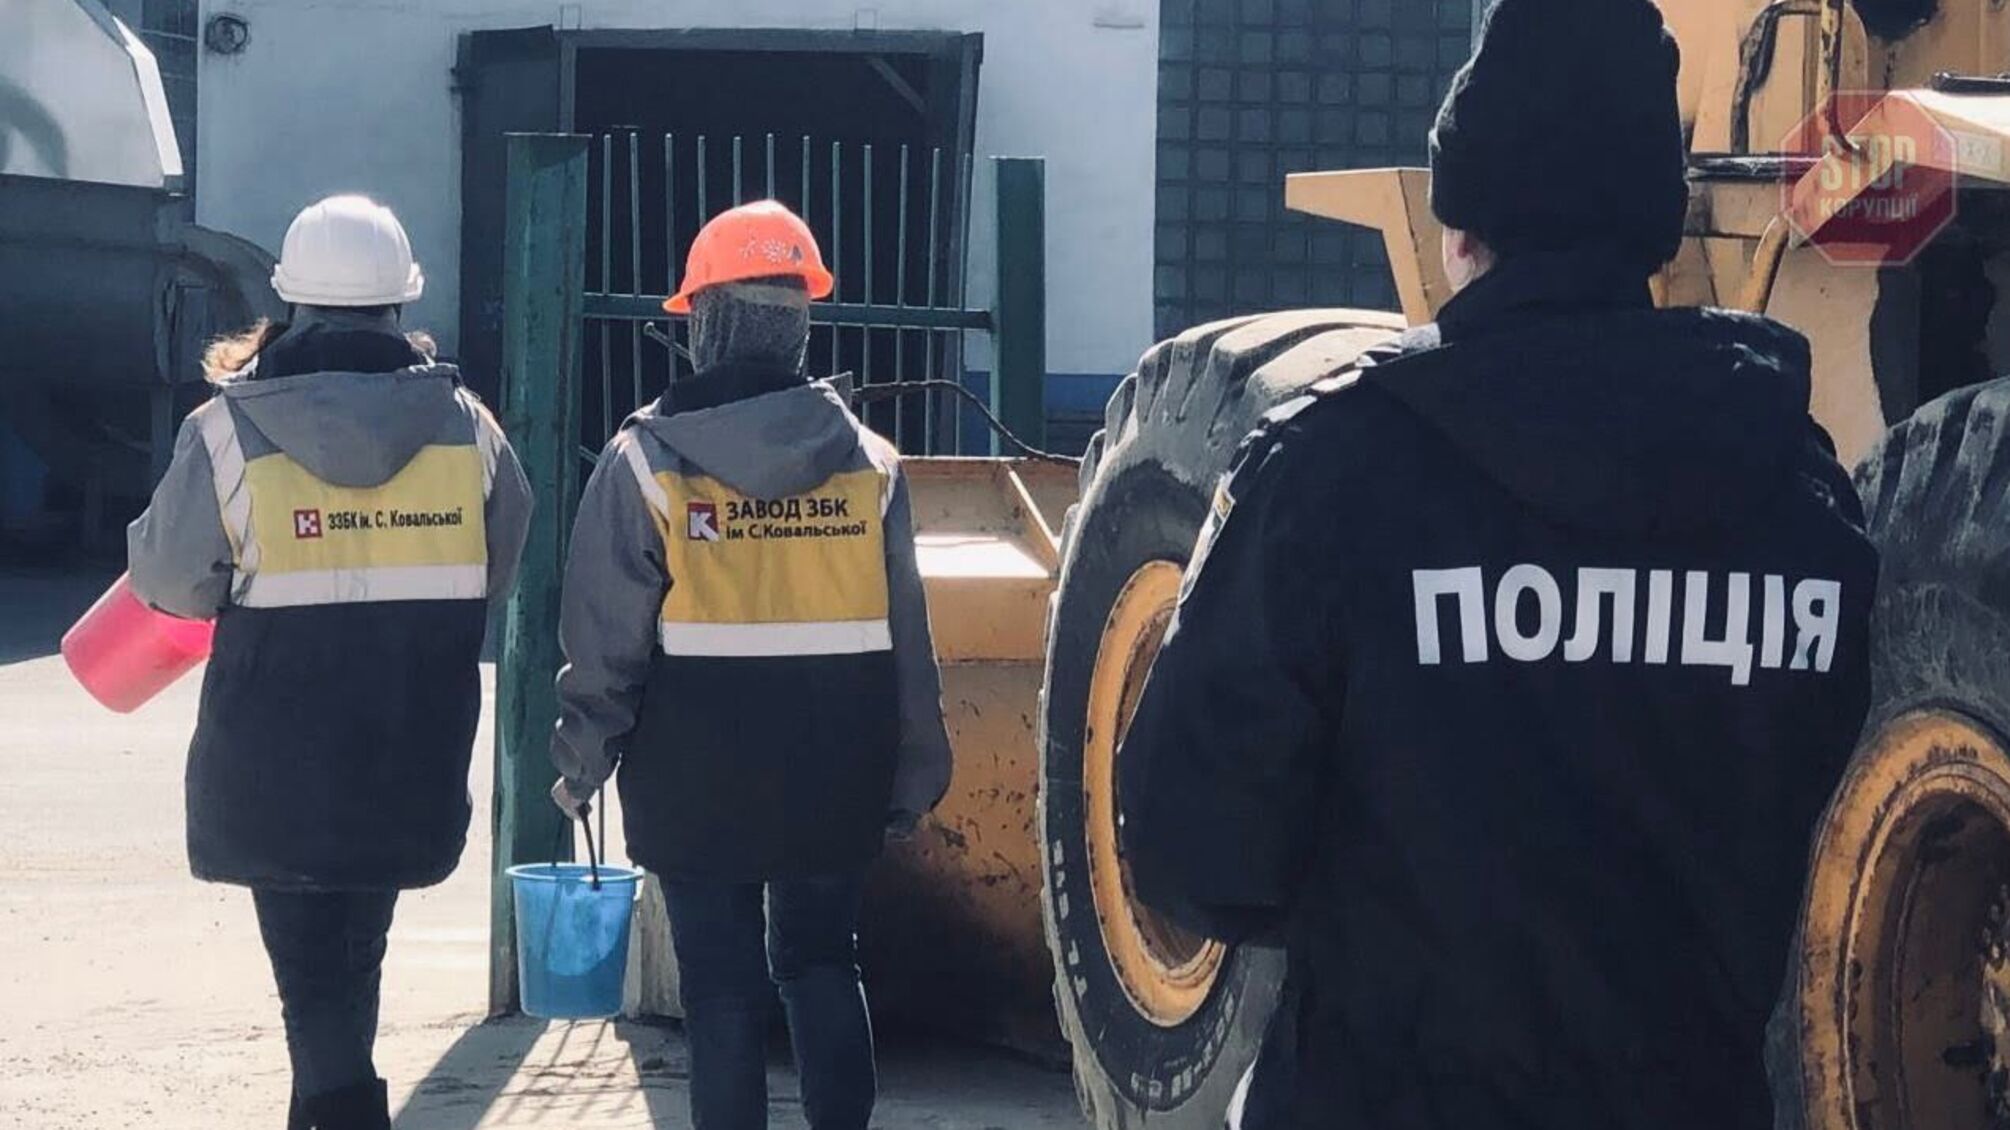 Колишній депутат Київради Паладій влаштував перевантаження краденого піску біля заводу Ковальської, – активісти